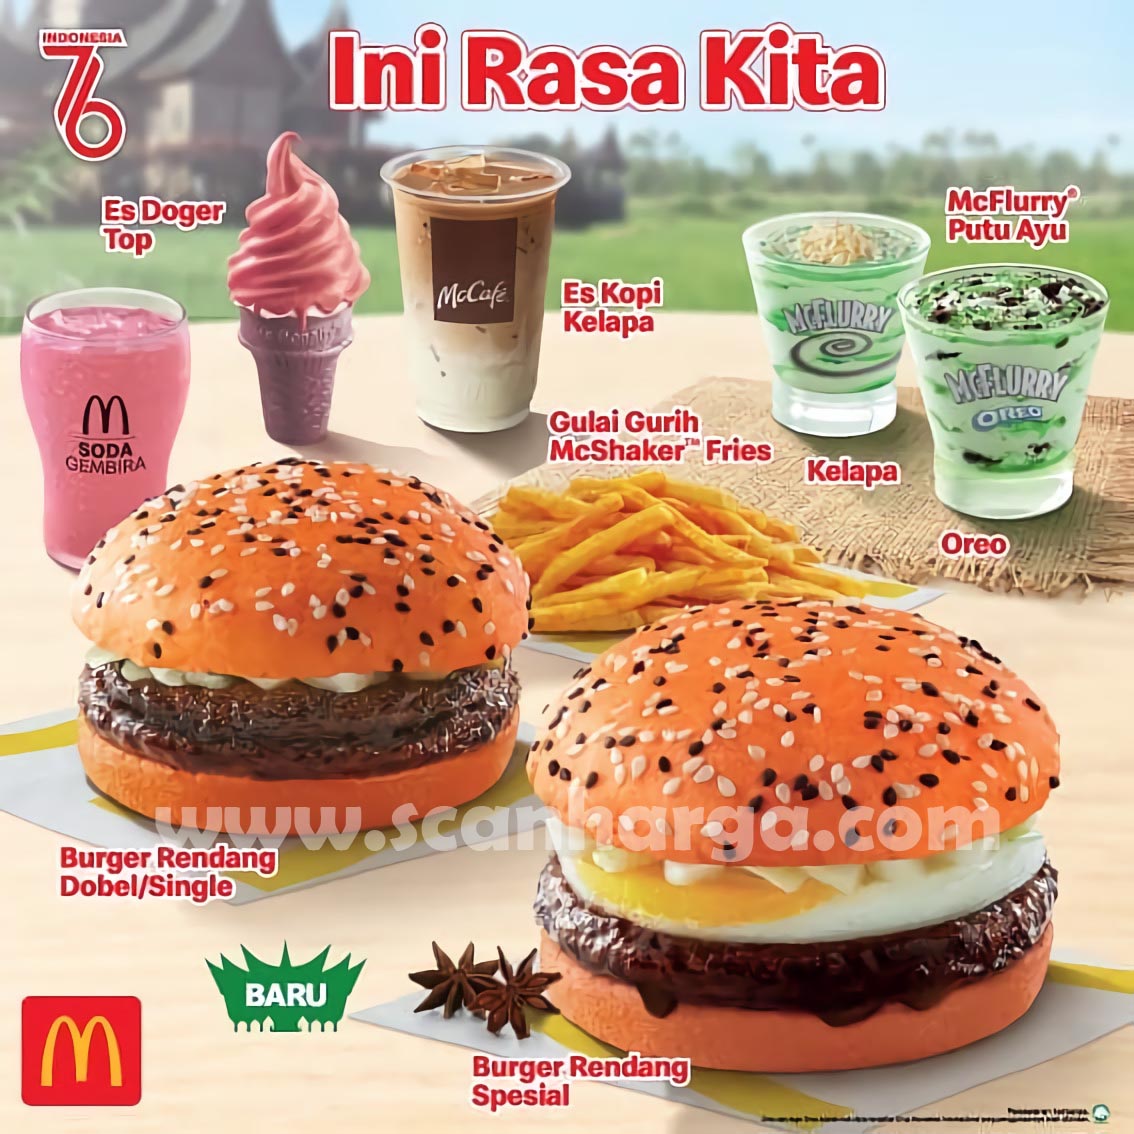 Promo McDonalds Menu Baru Varian INI RASA KITA dari McD*